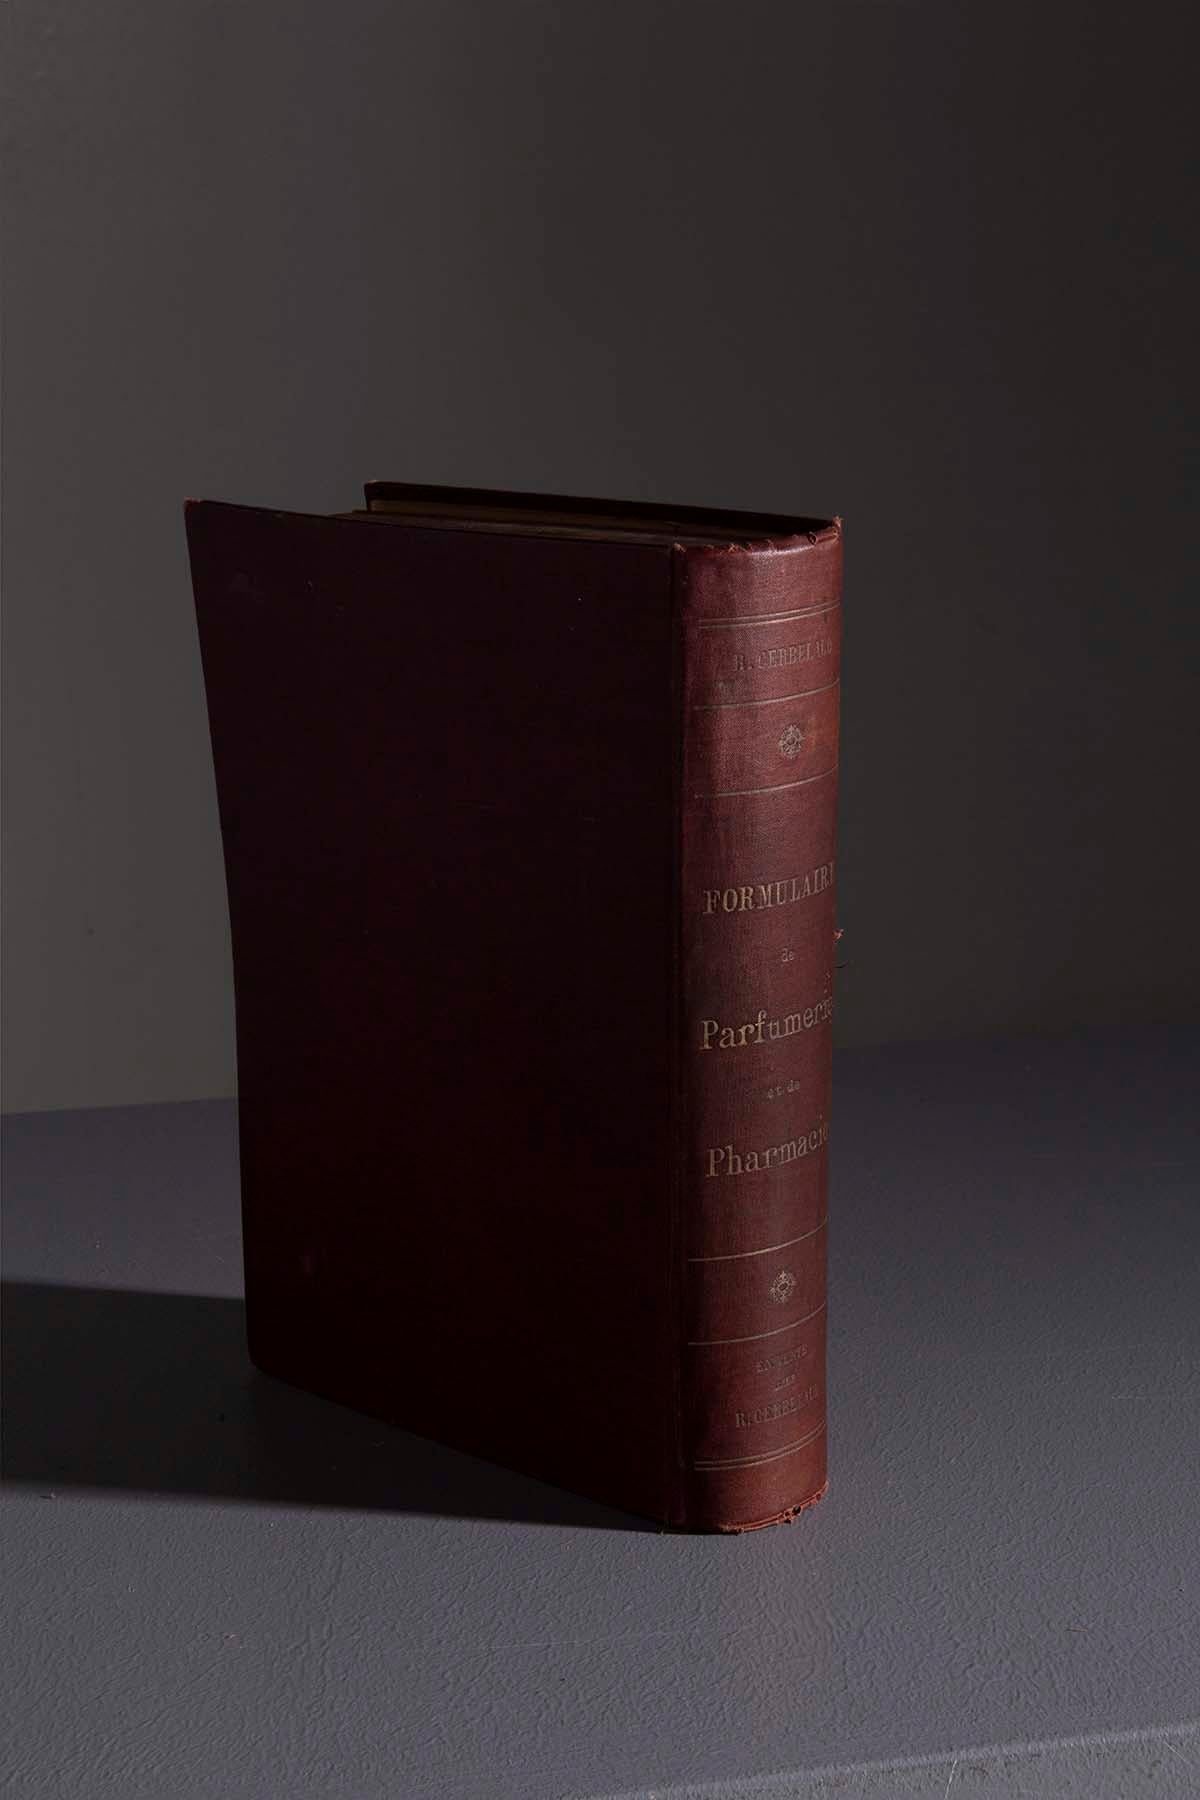 Nous vous invitons à un voyage de découverte intemporel, en vous dévoilant une véritable relique du passé : le livre rare de René Cerbelaud, datant de 1909. Intitulé 